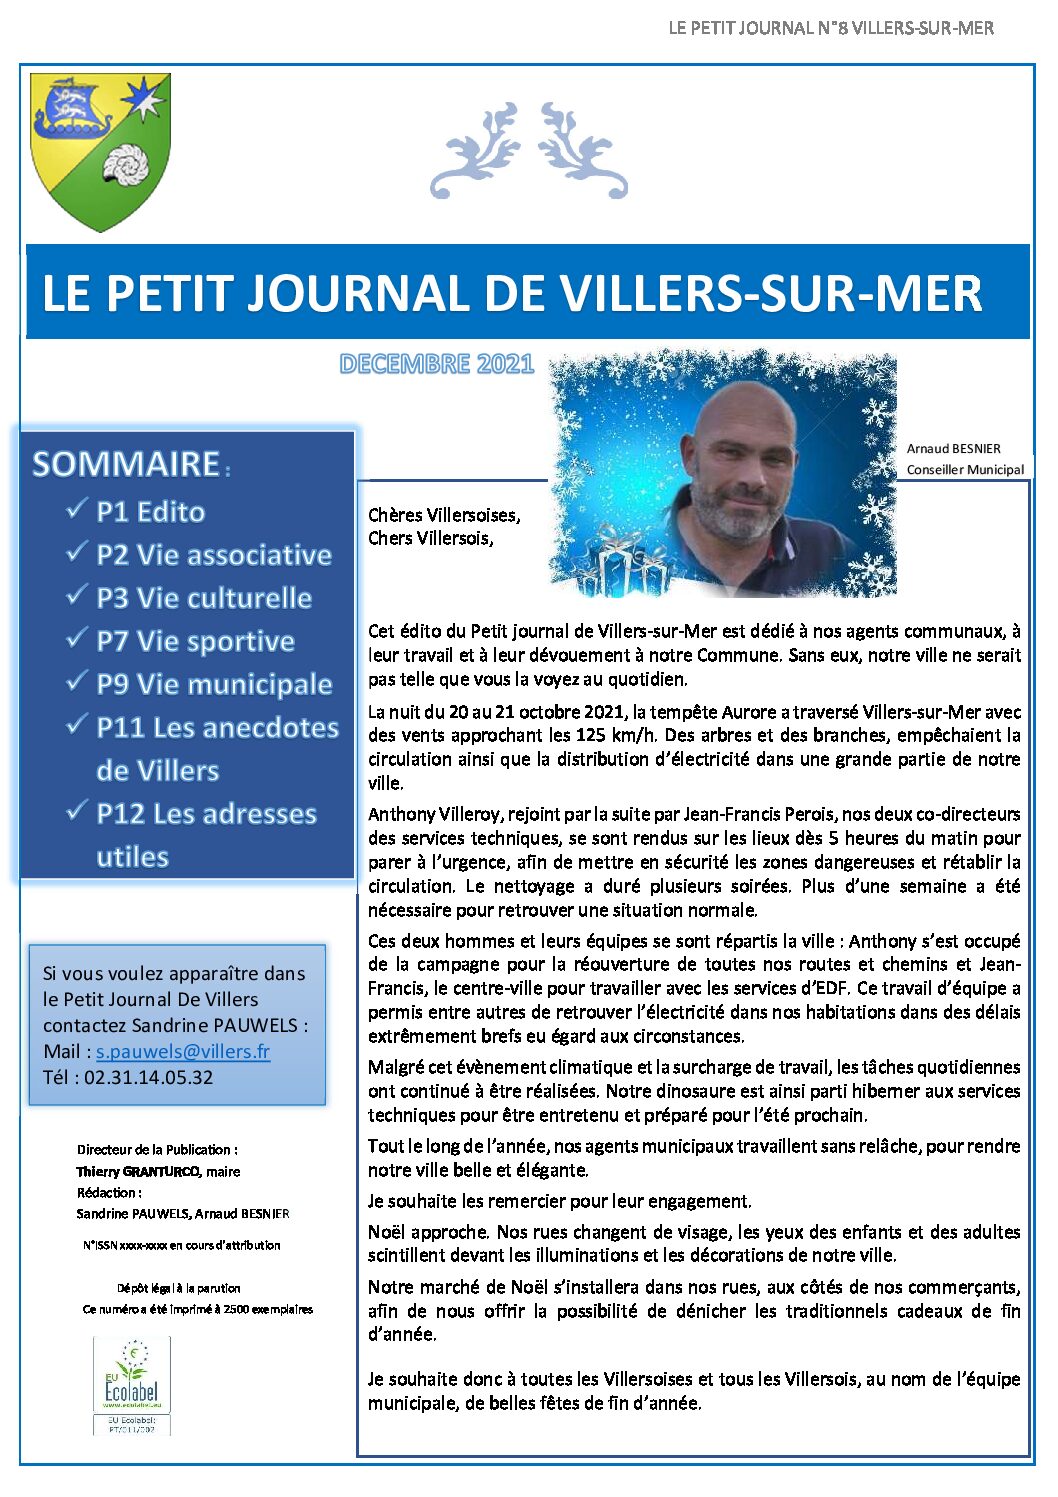 Le Petit Journal de Villers n°8 Décembre